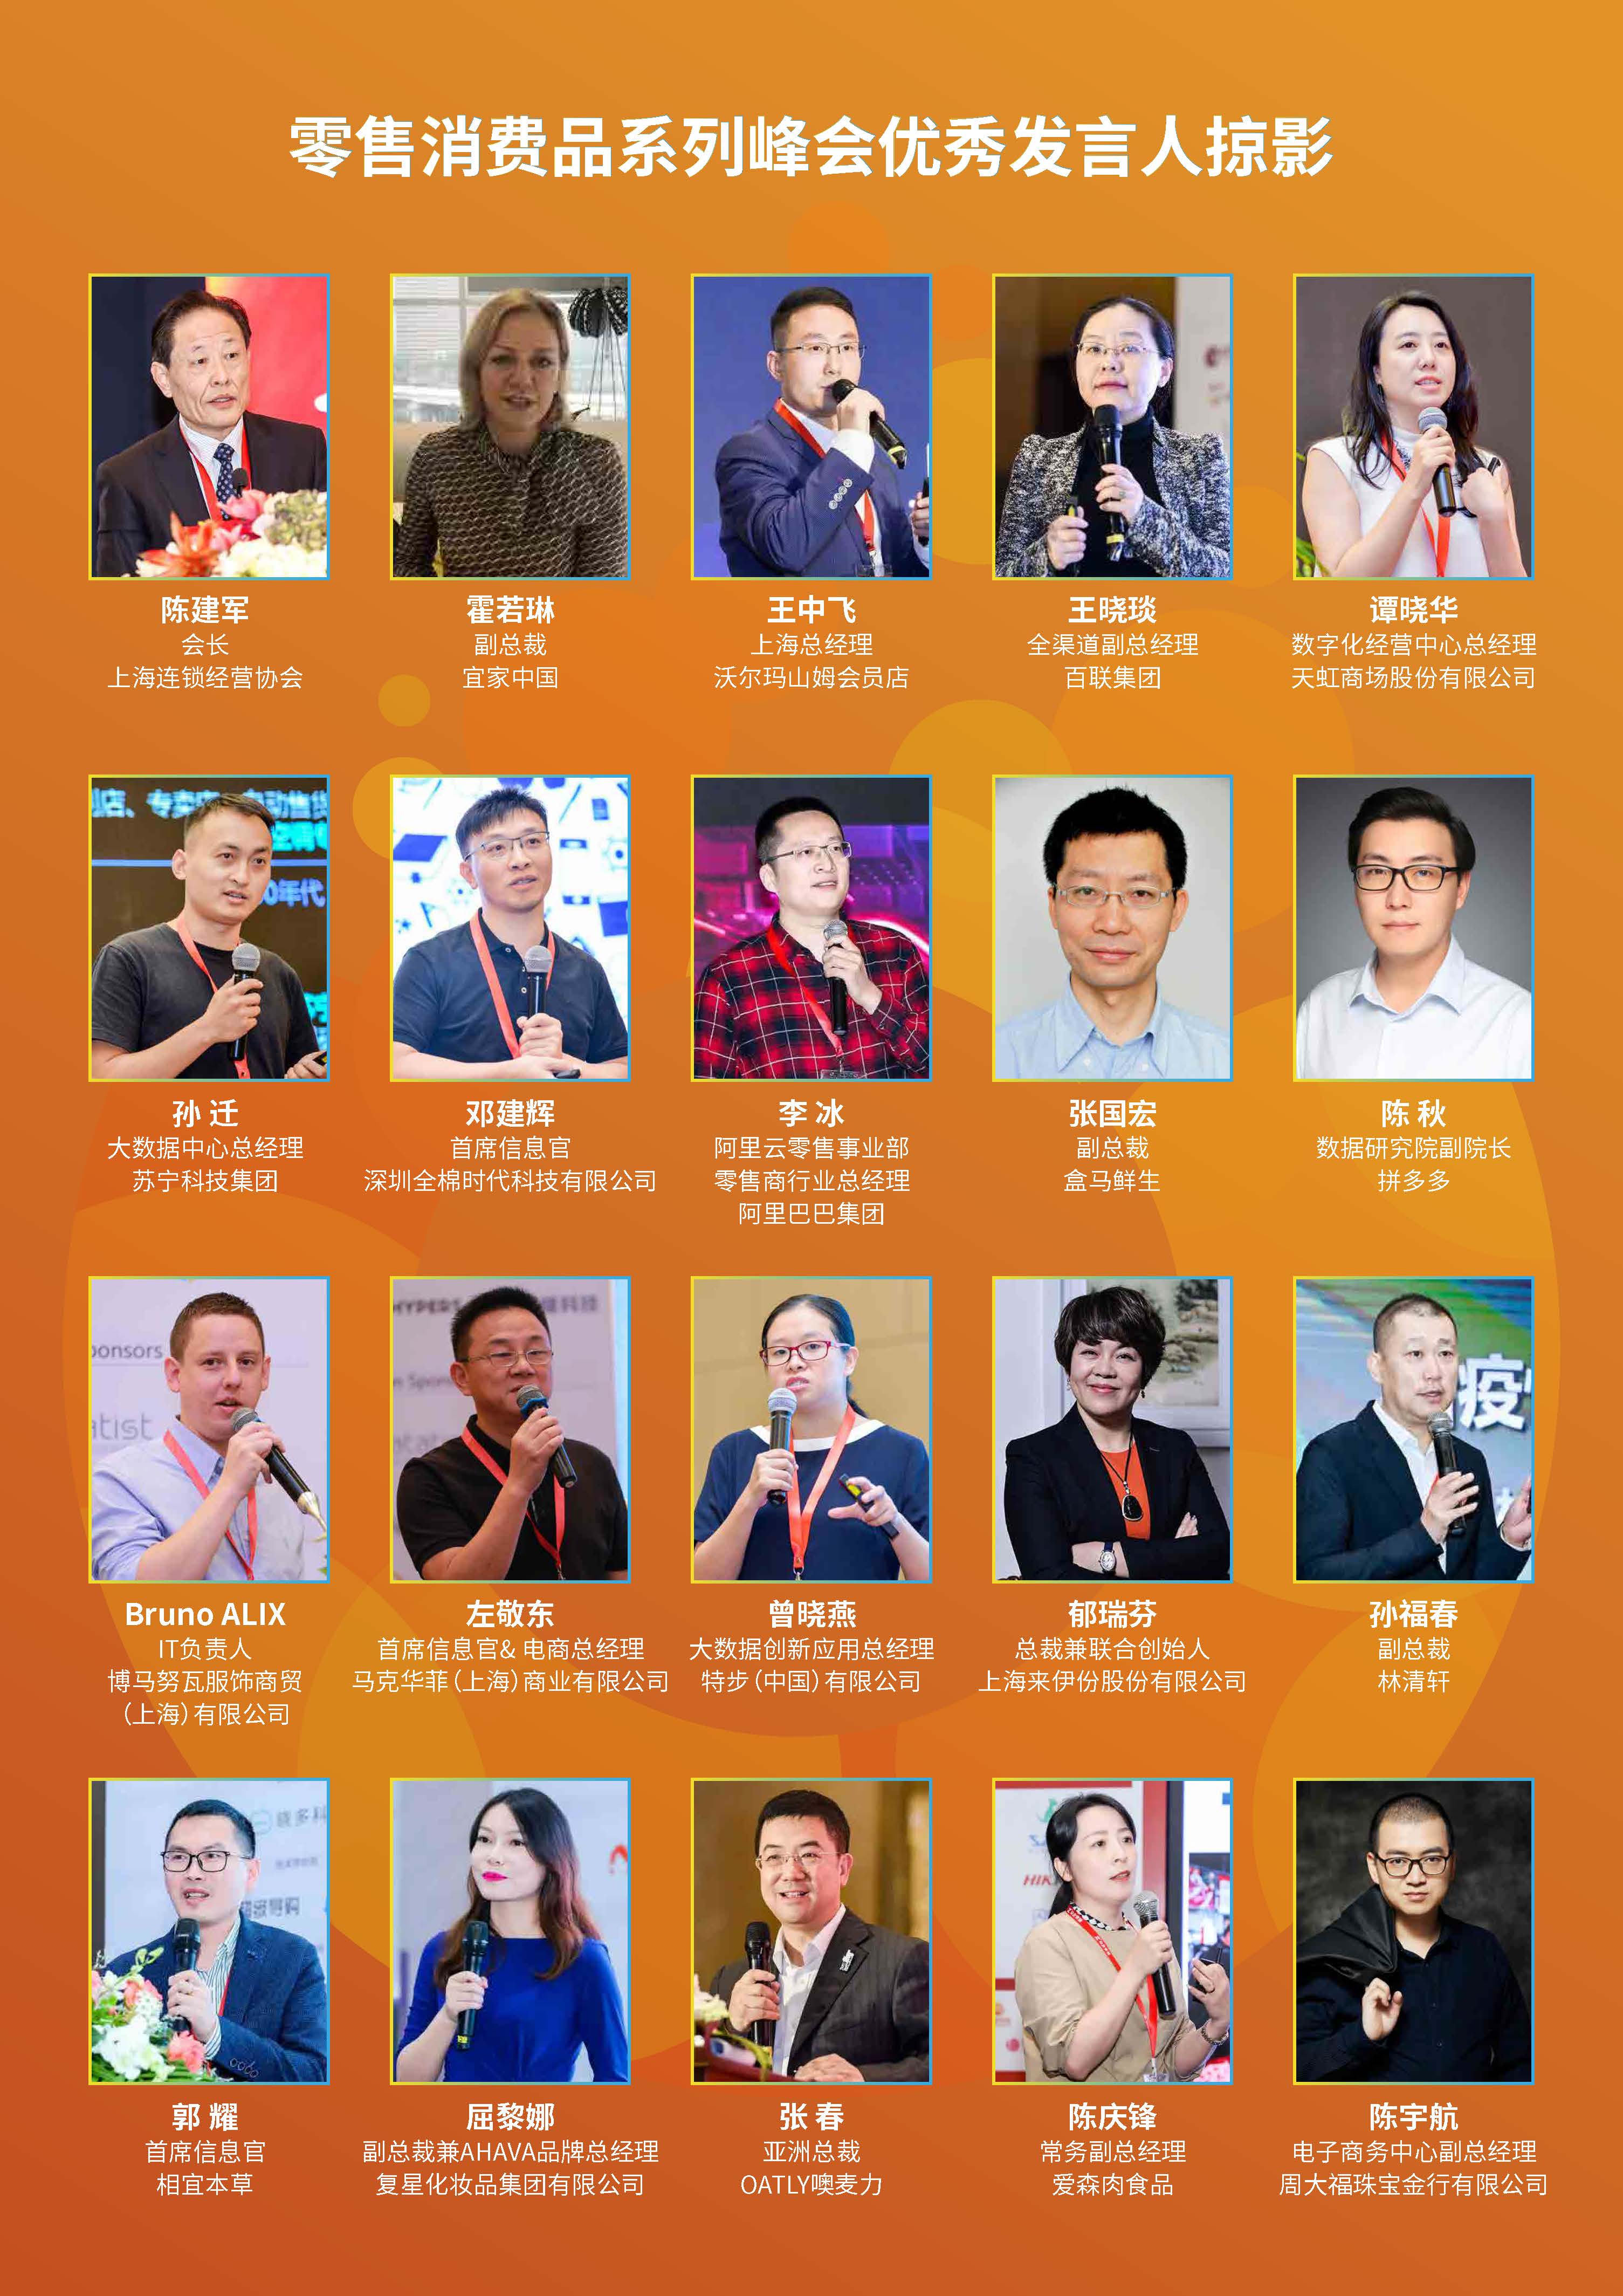 第十六届上海零售业大会暨中国零售创新峰会